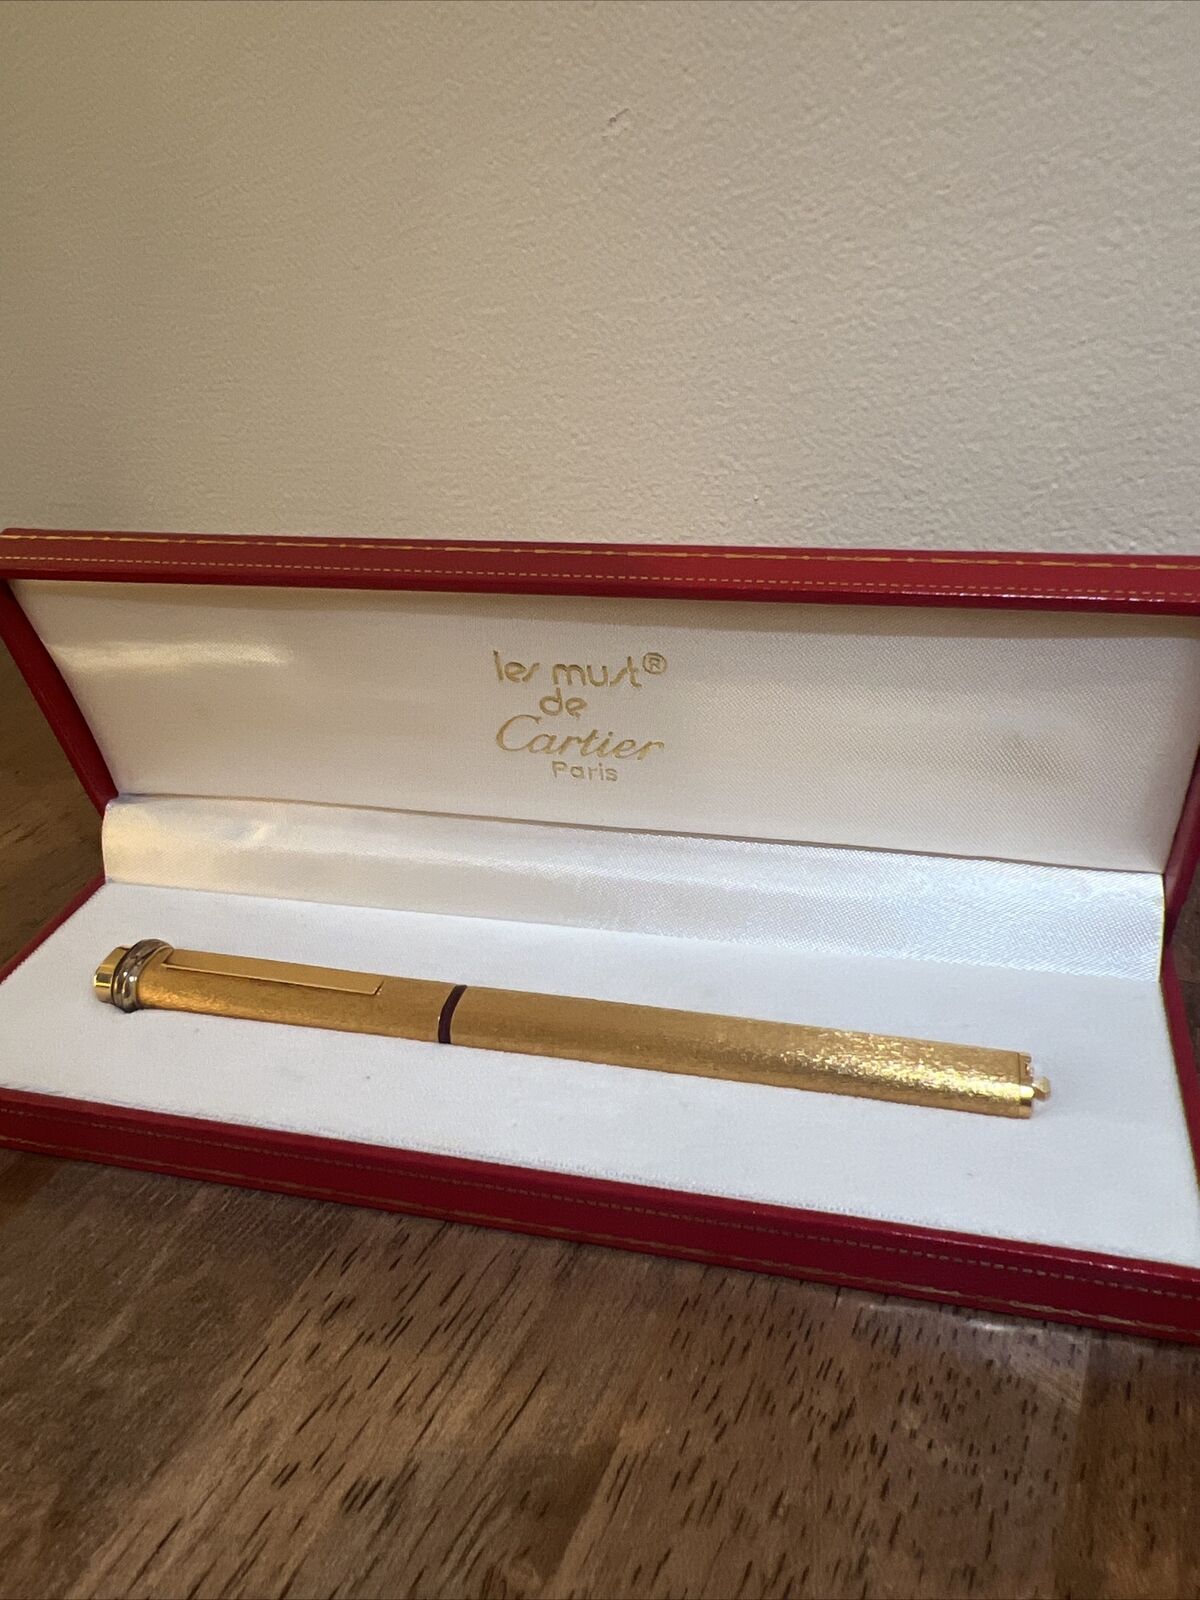 Cartier Paris Gold Plated Must De Cartier Ballpoint Pen In Original Box